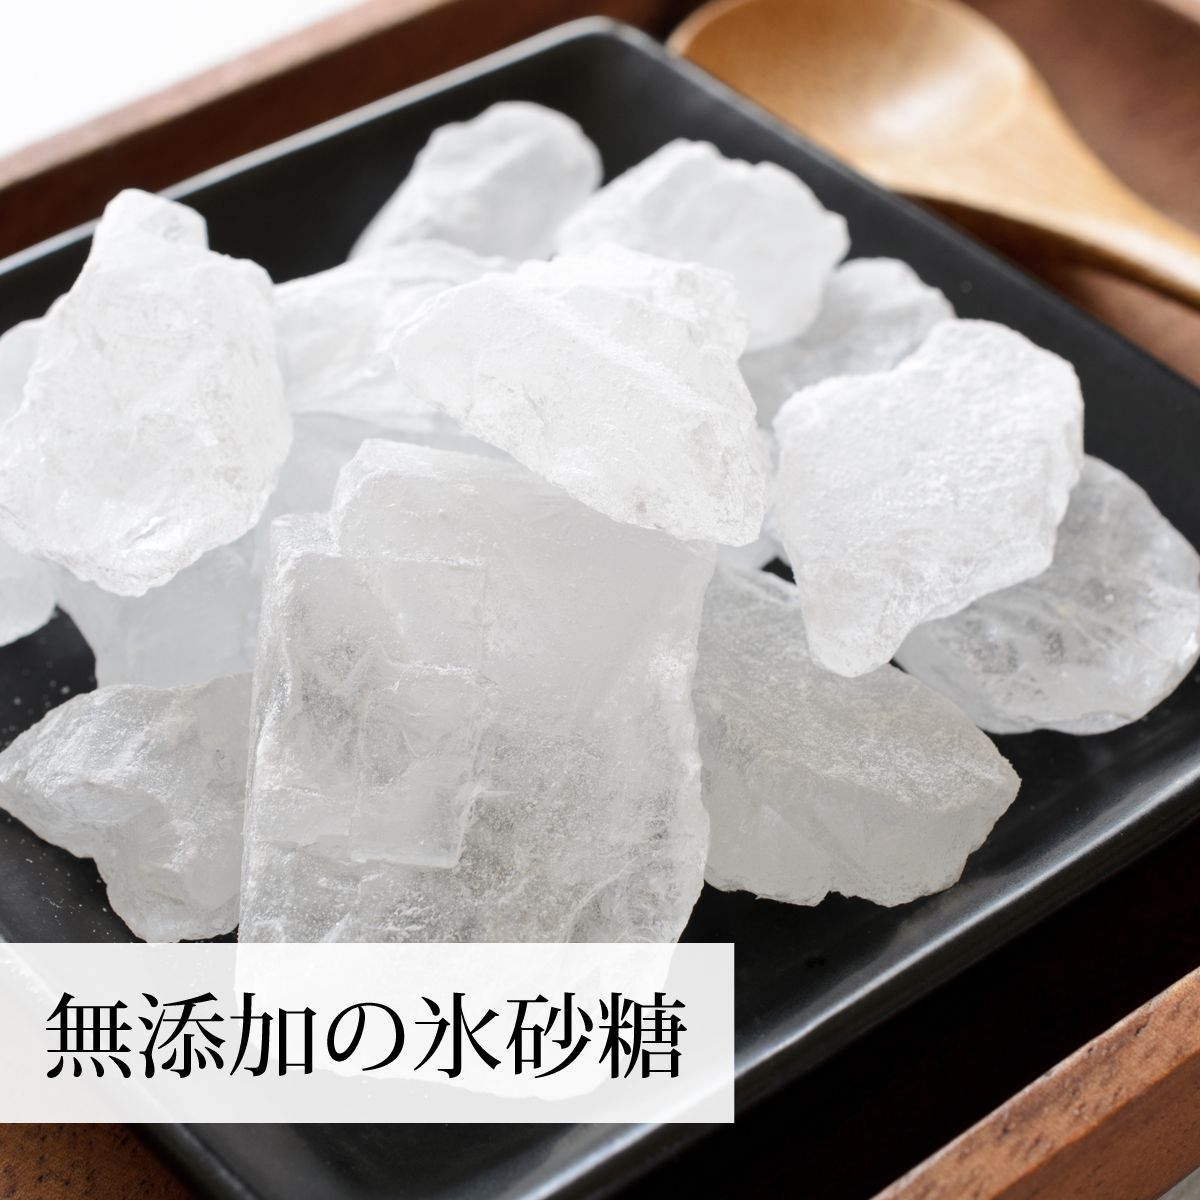 【高額売筋】 氷砂糖 1kg×4個 ロック 無添加 業務用 国産 大粒 てんさい糖 氷砂糖